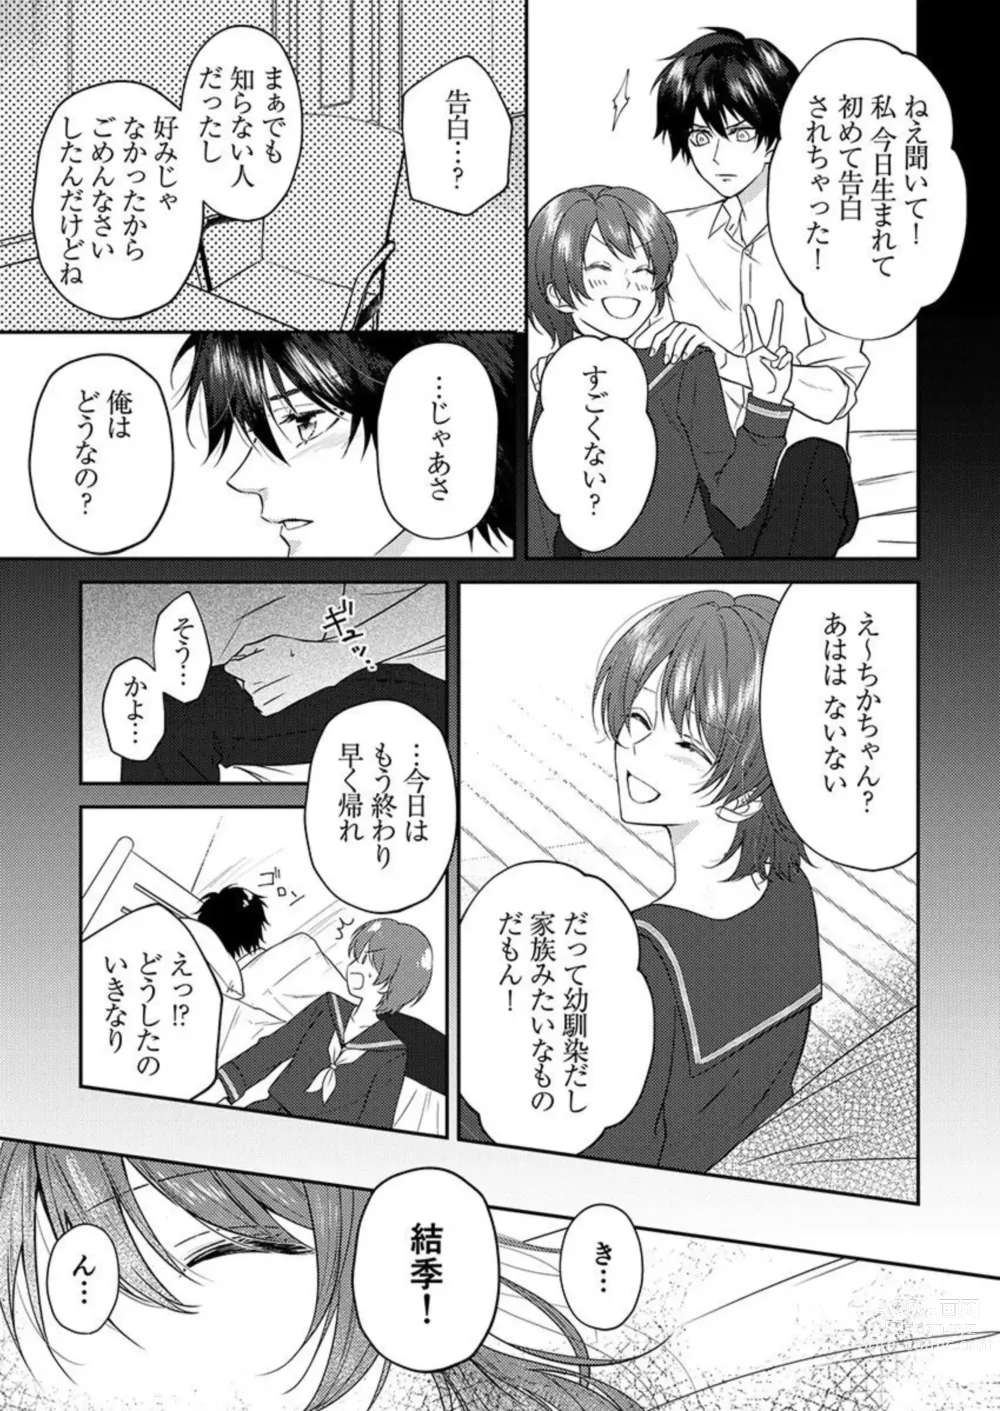 Page 7 of manga Osananajimi wa Mou Yameta.